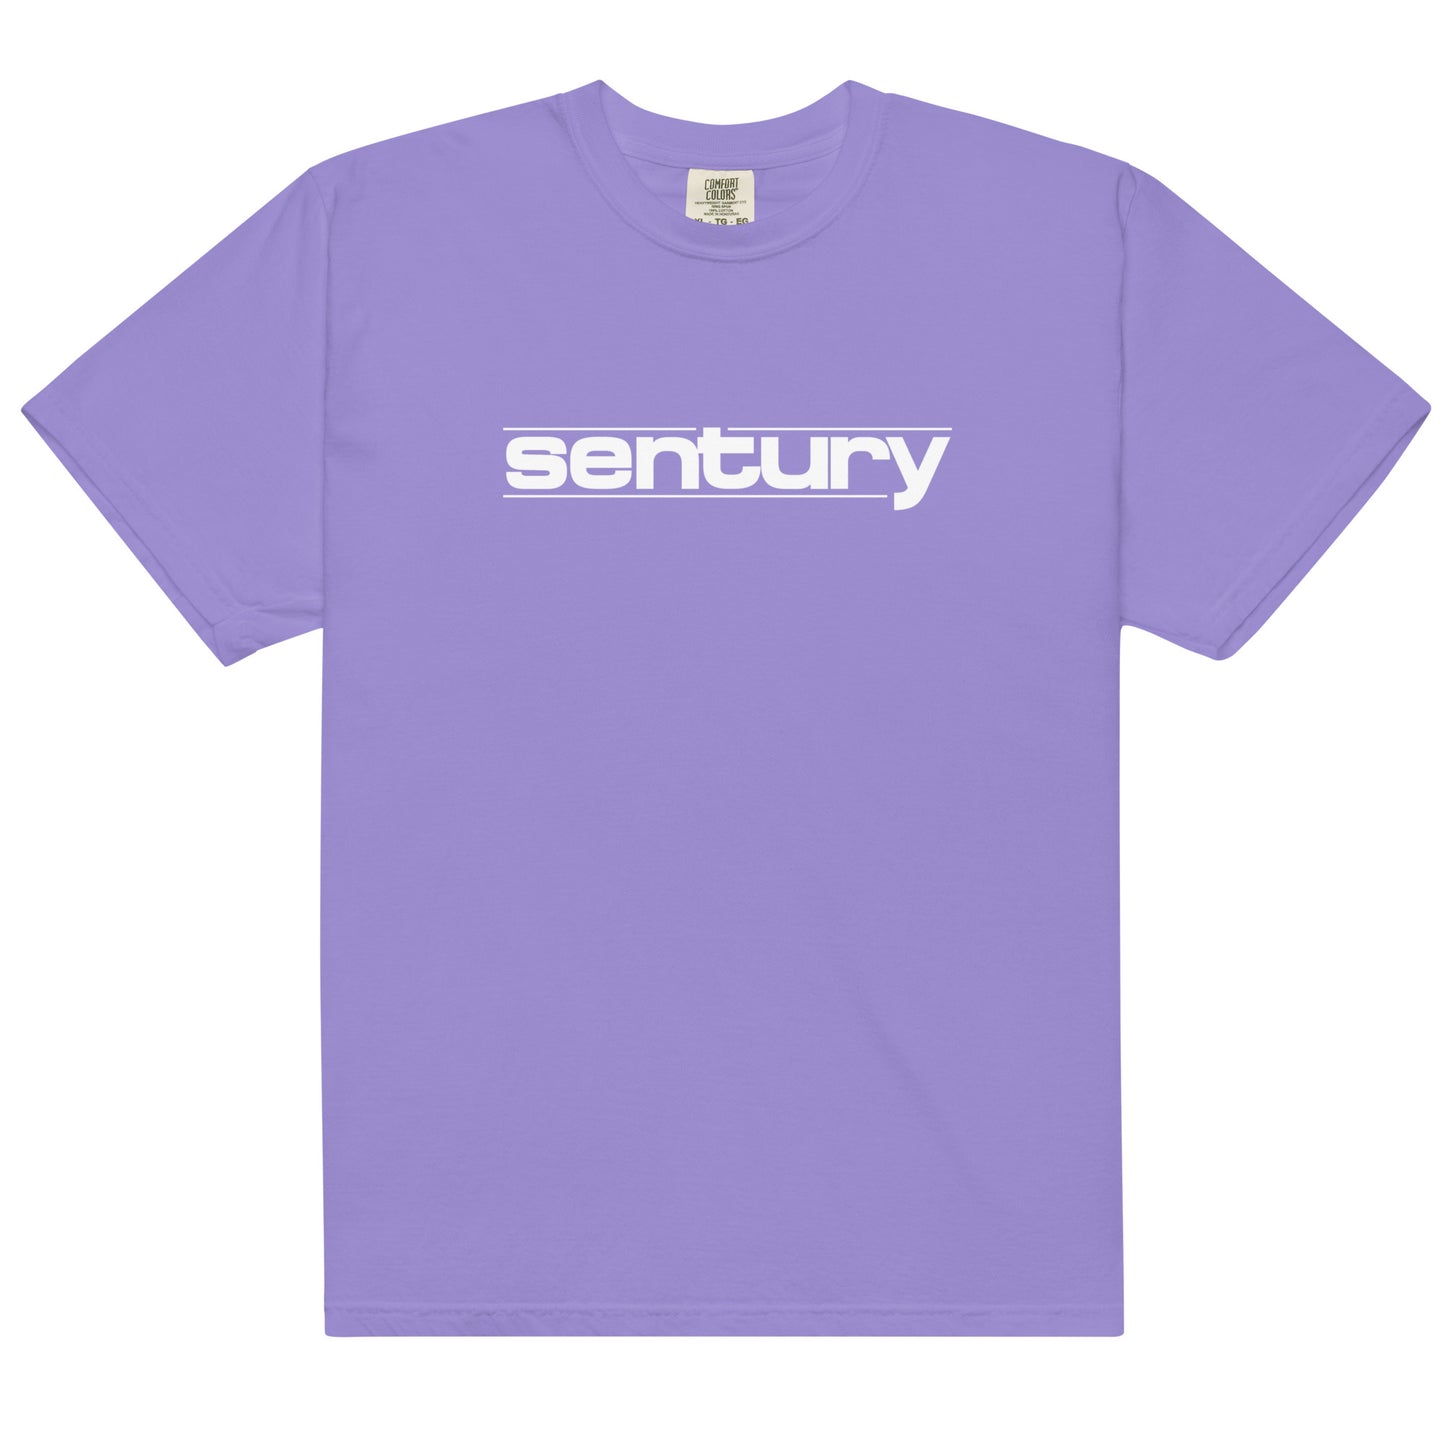 Sentury T-shirt